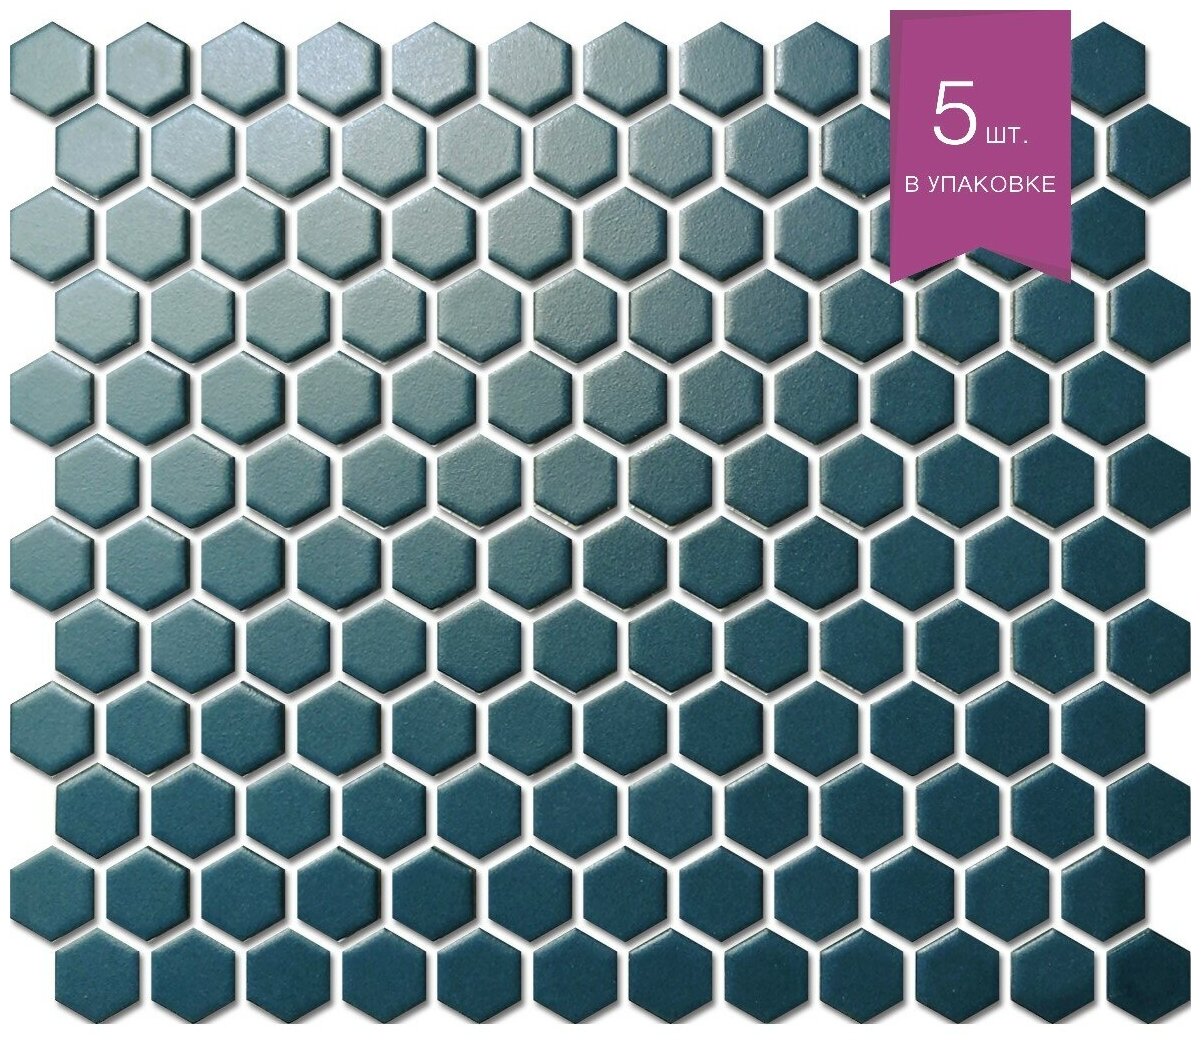 Мозаика керамическая NS mosaic PS2326-08 260x300 чип 23х26 уп 5 шт